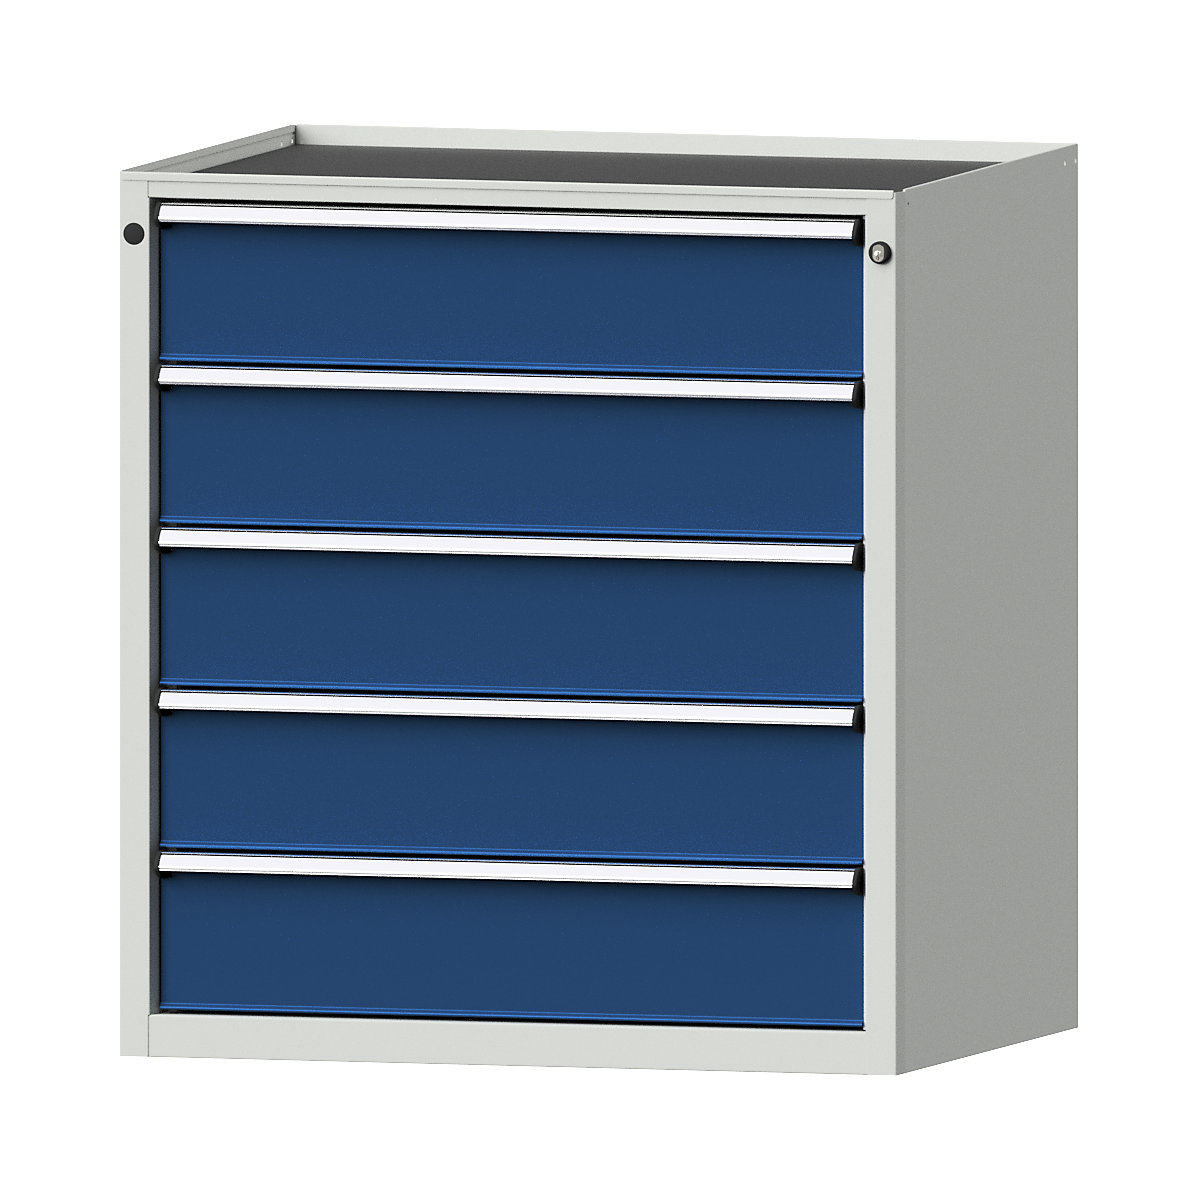 Szafa z szufladami – ANKE, szer. x głęb. 910 x 675 mm, 5 szuflad, wys. 980 mm, front niebieski gencjanowy-13